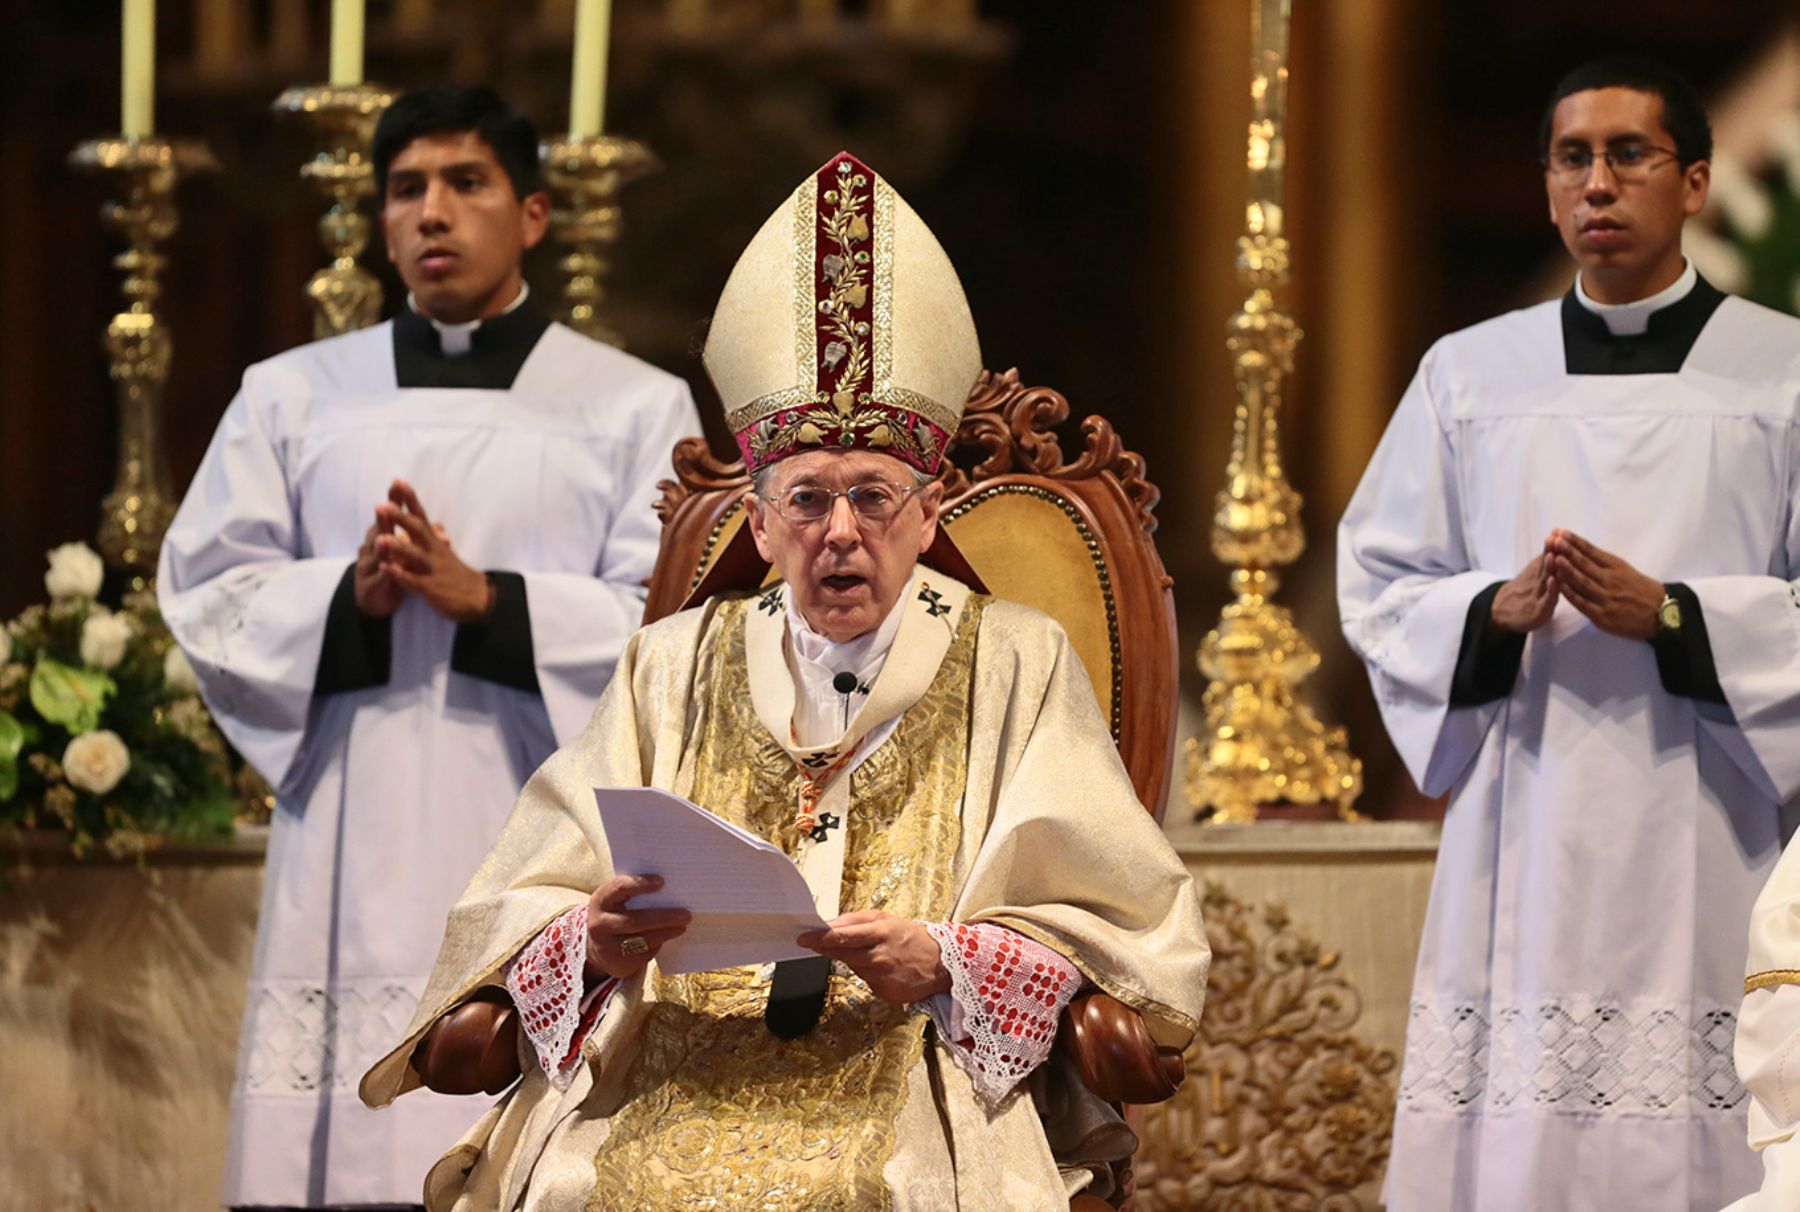  “La mujer es culpable de las violaciones”: Arzobispo